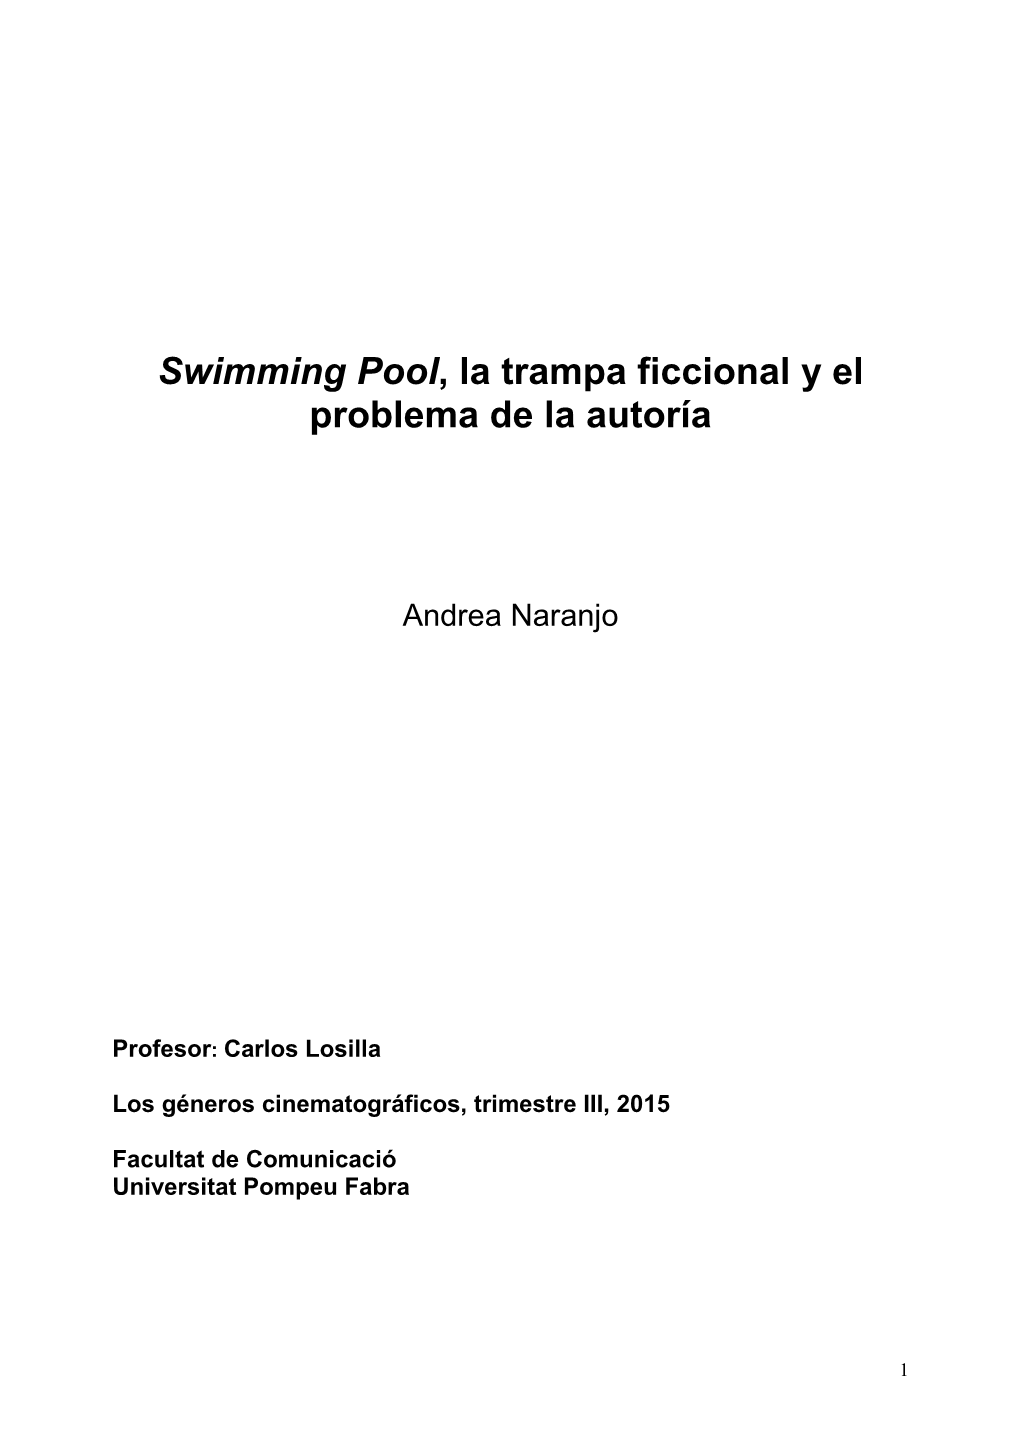 Swimming Pool, La Trampa Ficcional Y El Problema De La Autoría